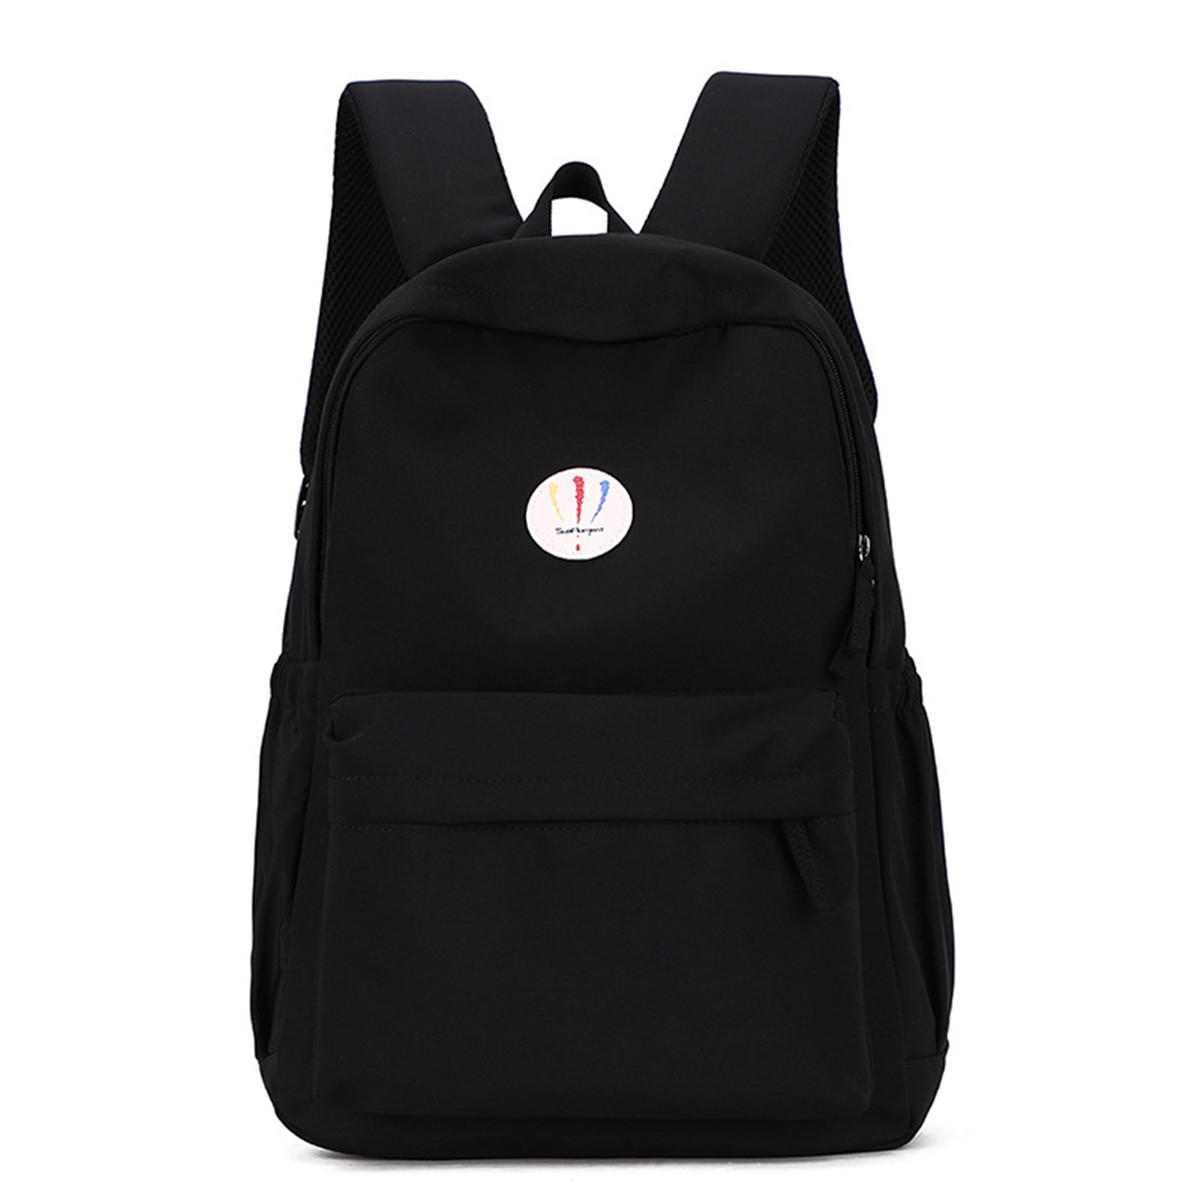 19L Νάιλον Backpack Rucksack 14inch Laptop Student School Shoulder Bag Outdoor Travel